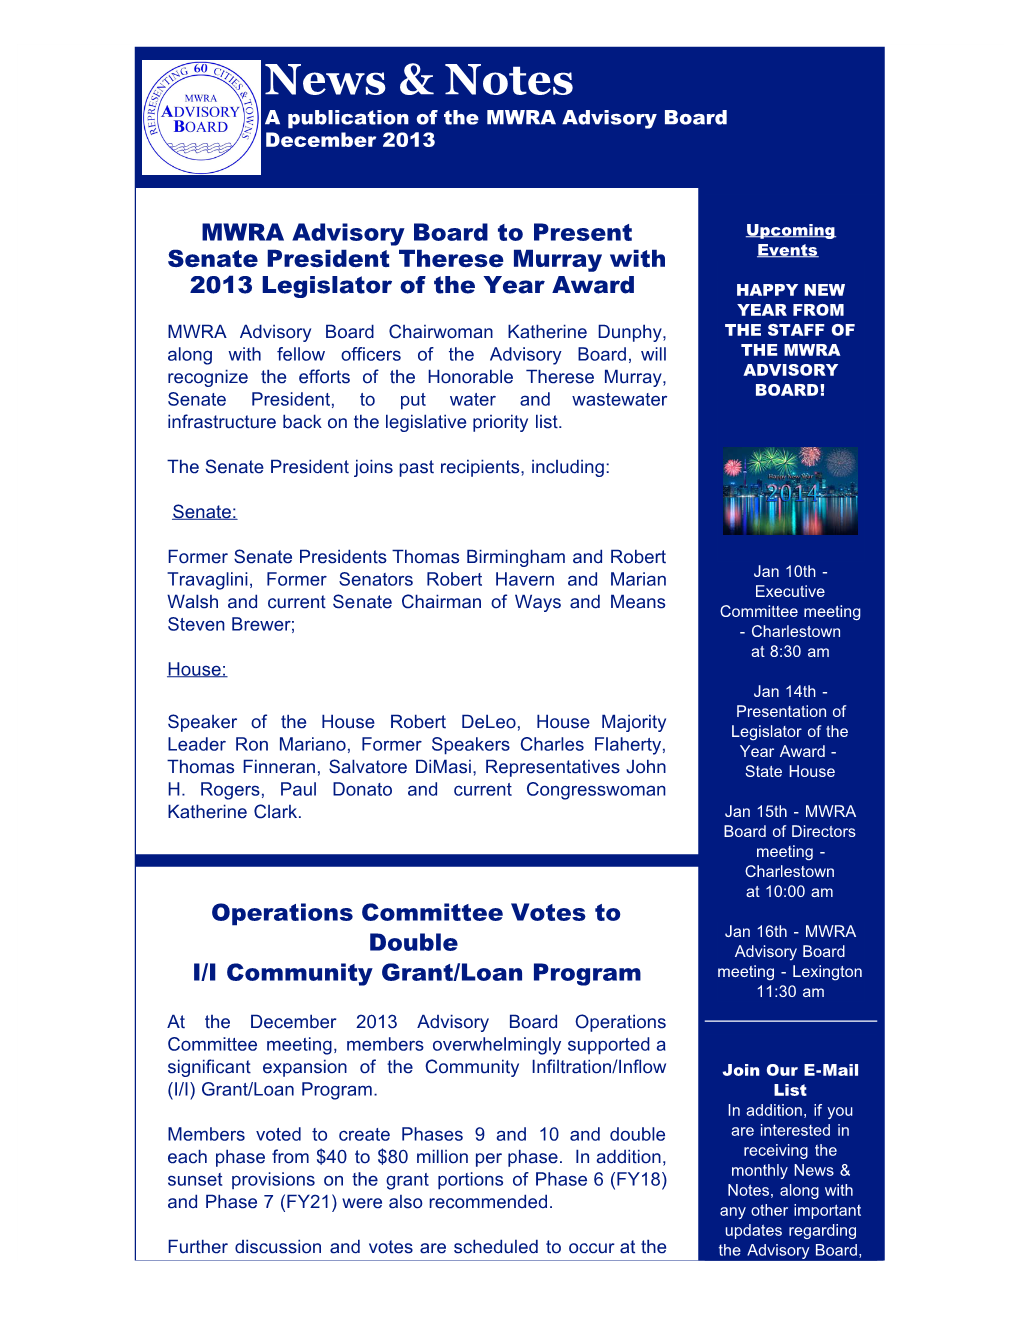 MWRA Advisory Board December News & Notes